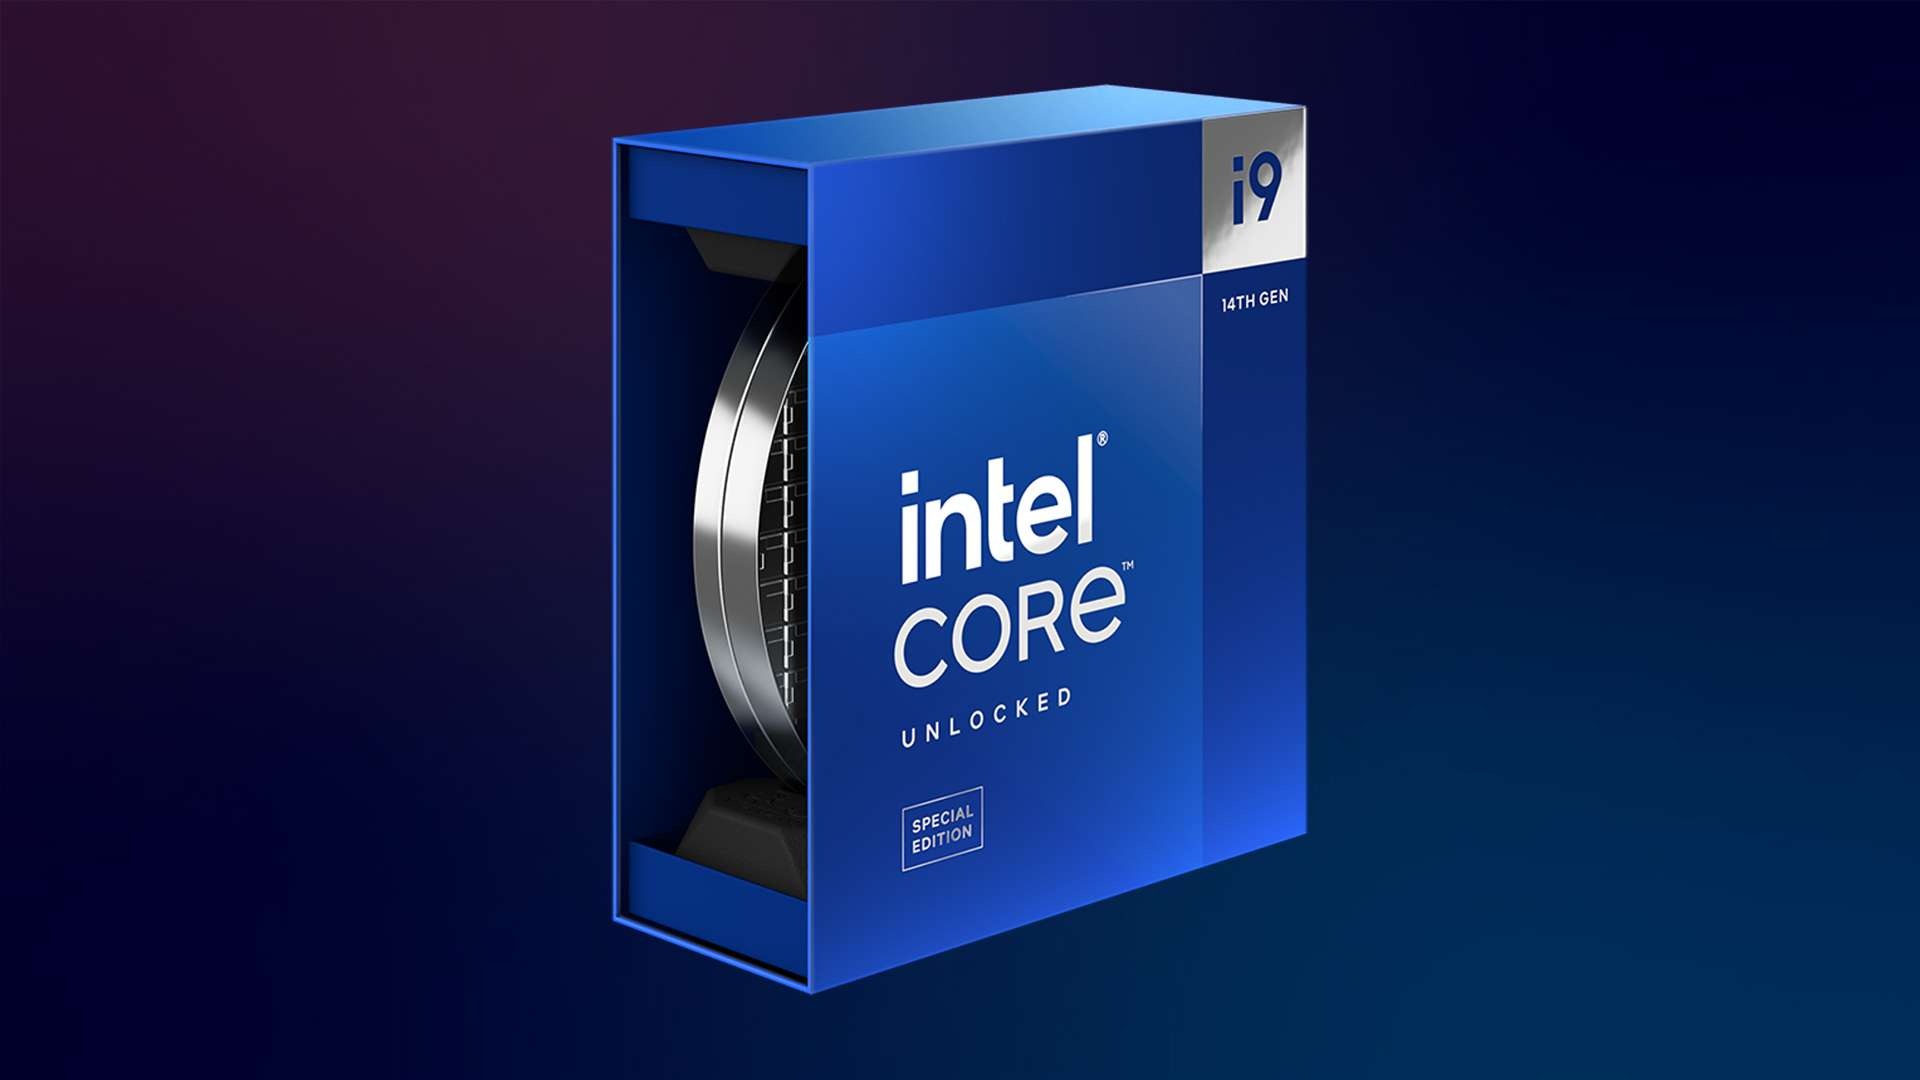 Processador Intel Core i9-14900KS é lançado com inéditos 6,2 GHz de frequência